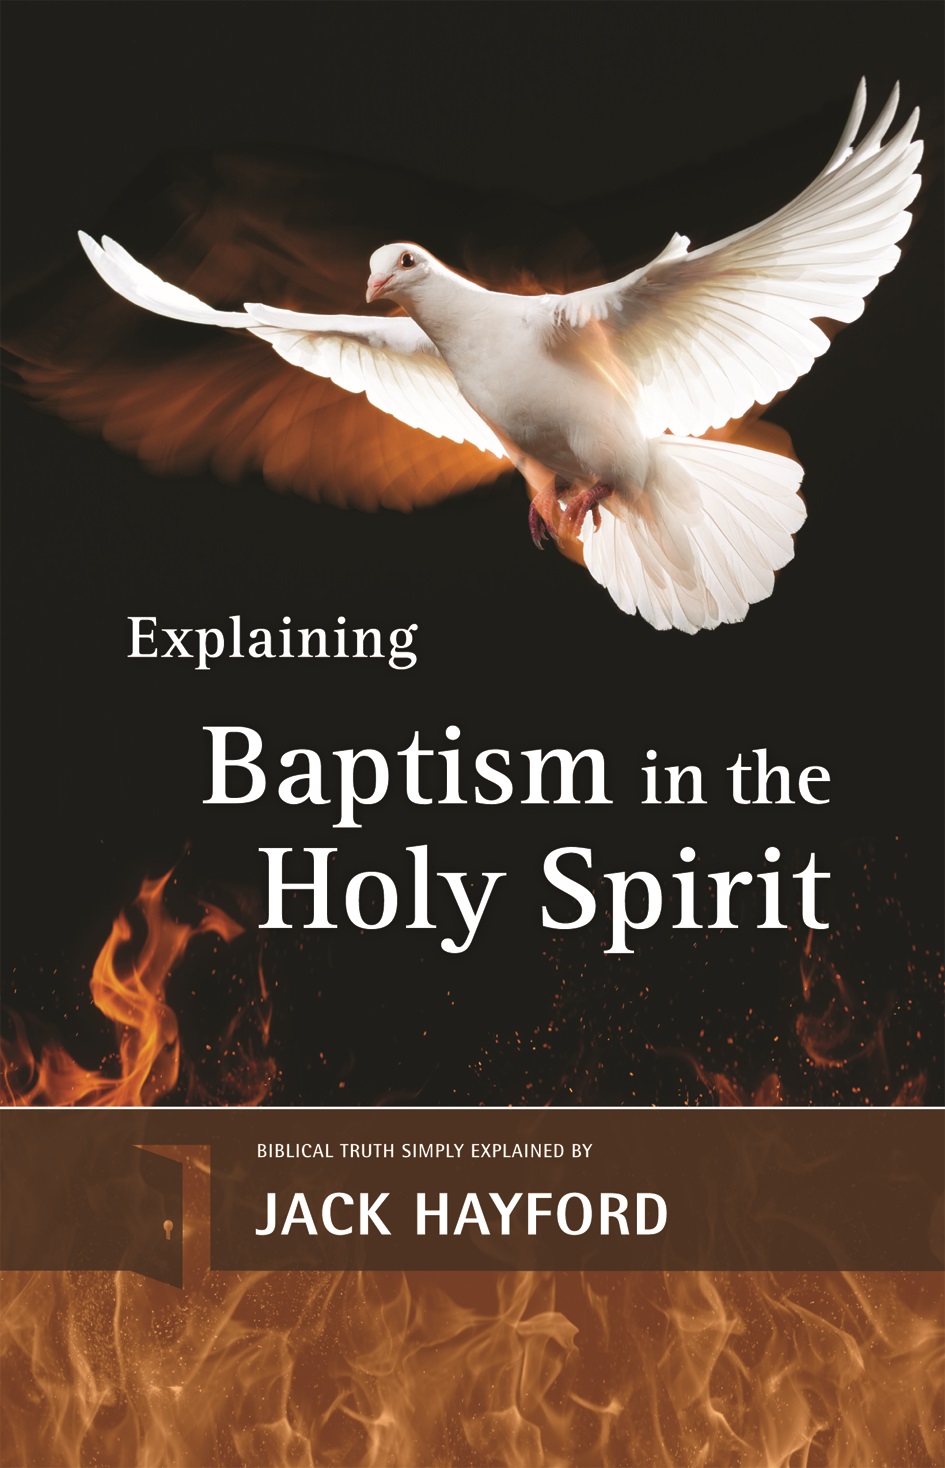 Explaining Baptism with the Holy Spirit. Jack Hayford